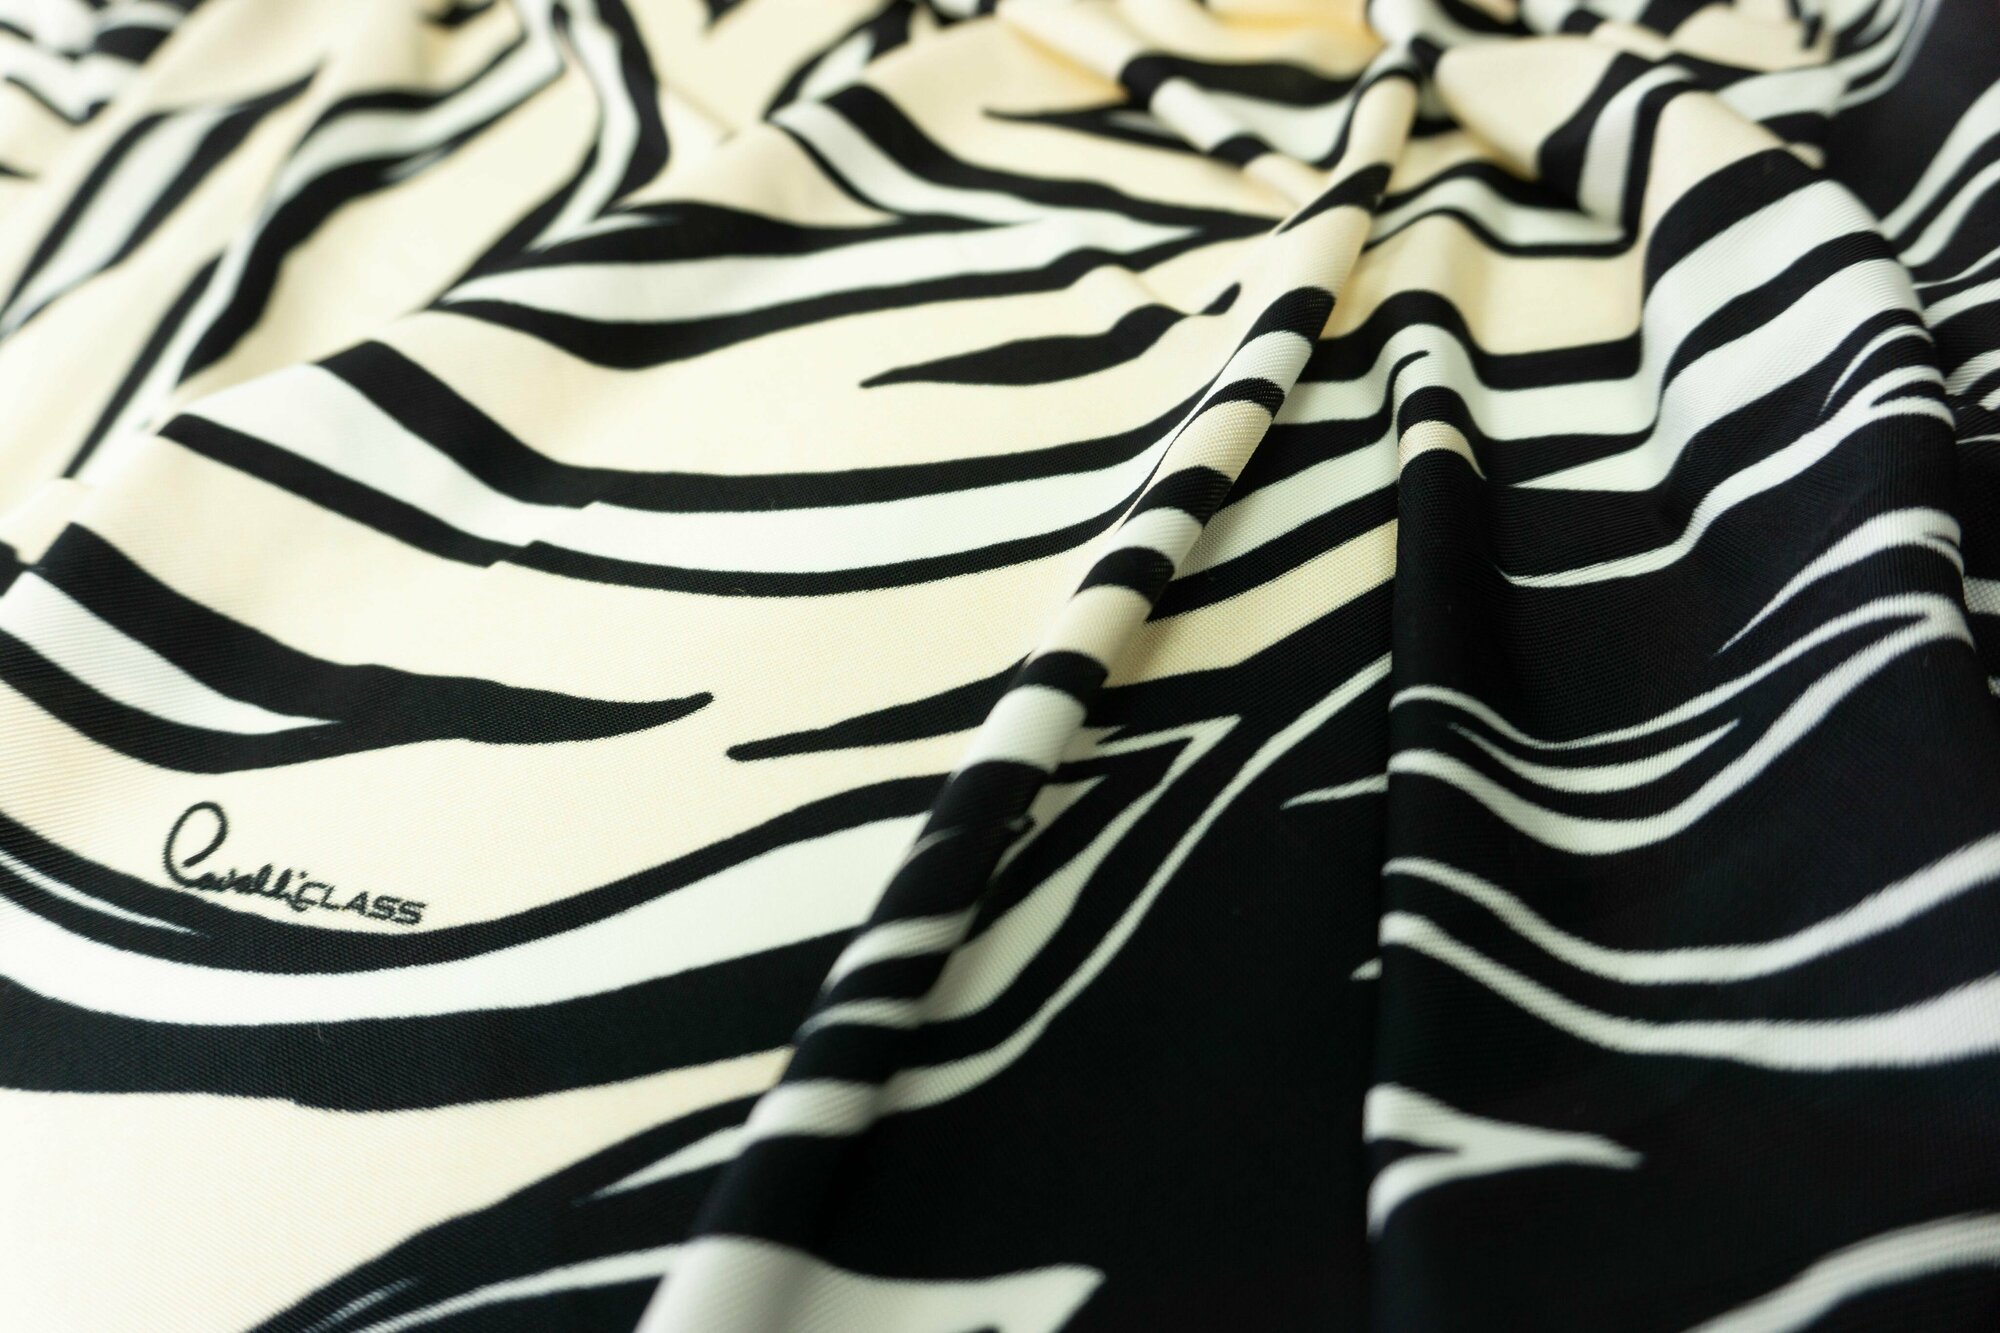 Ткань Трикоаж вискоза черно-белый тигриный принт купон 90 см. Ткань для шитья